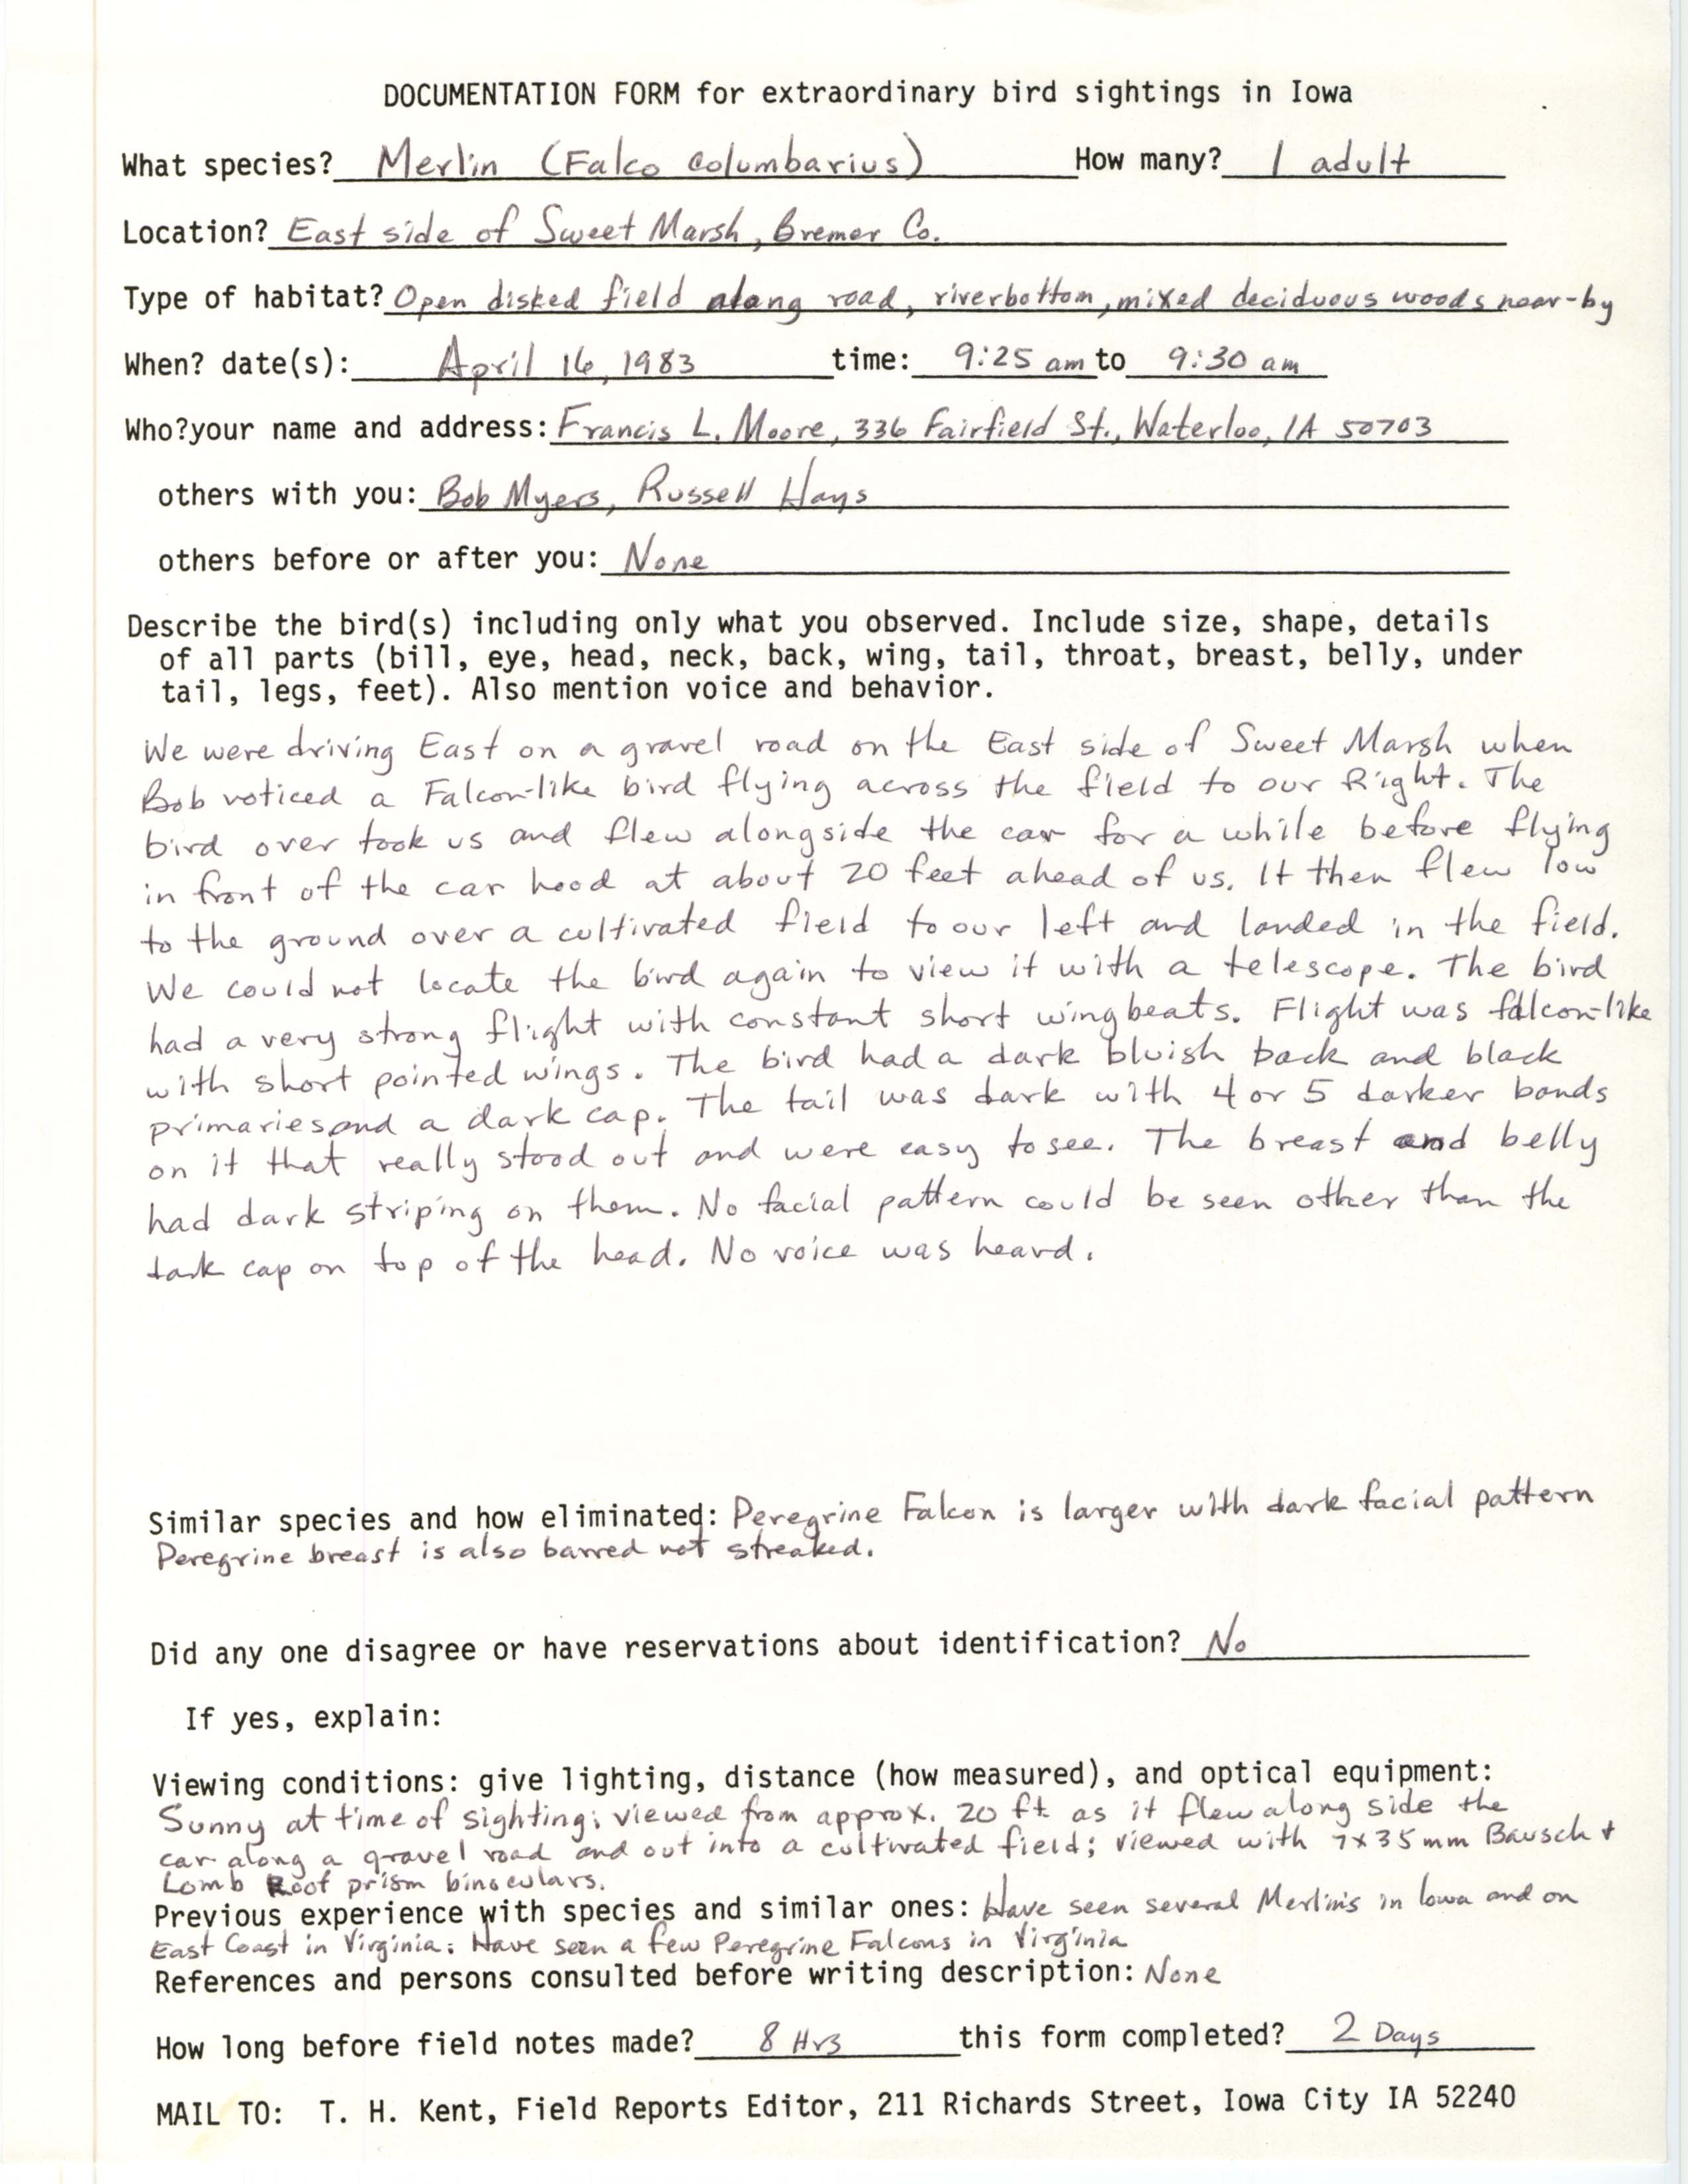 Rare bird documentation form for Merlin east side of Sweet Marsh, 1983